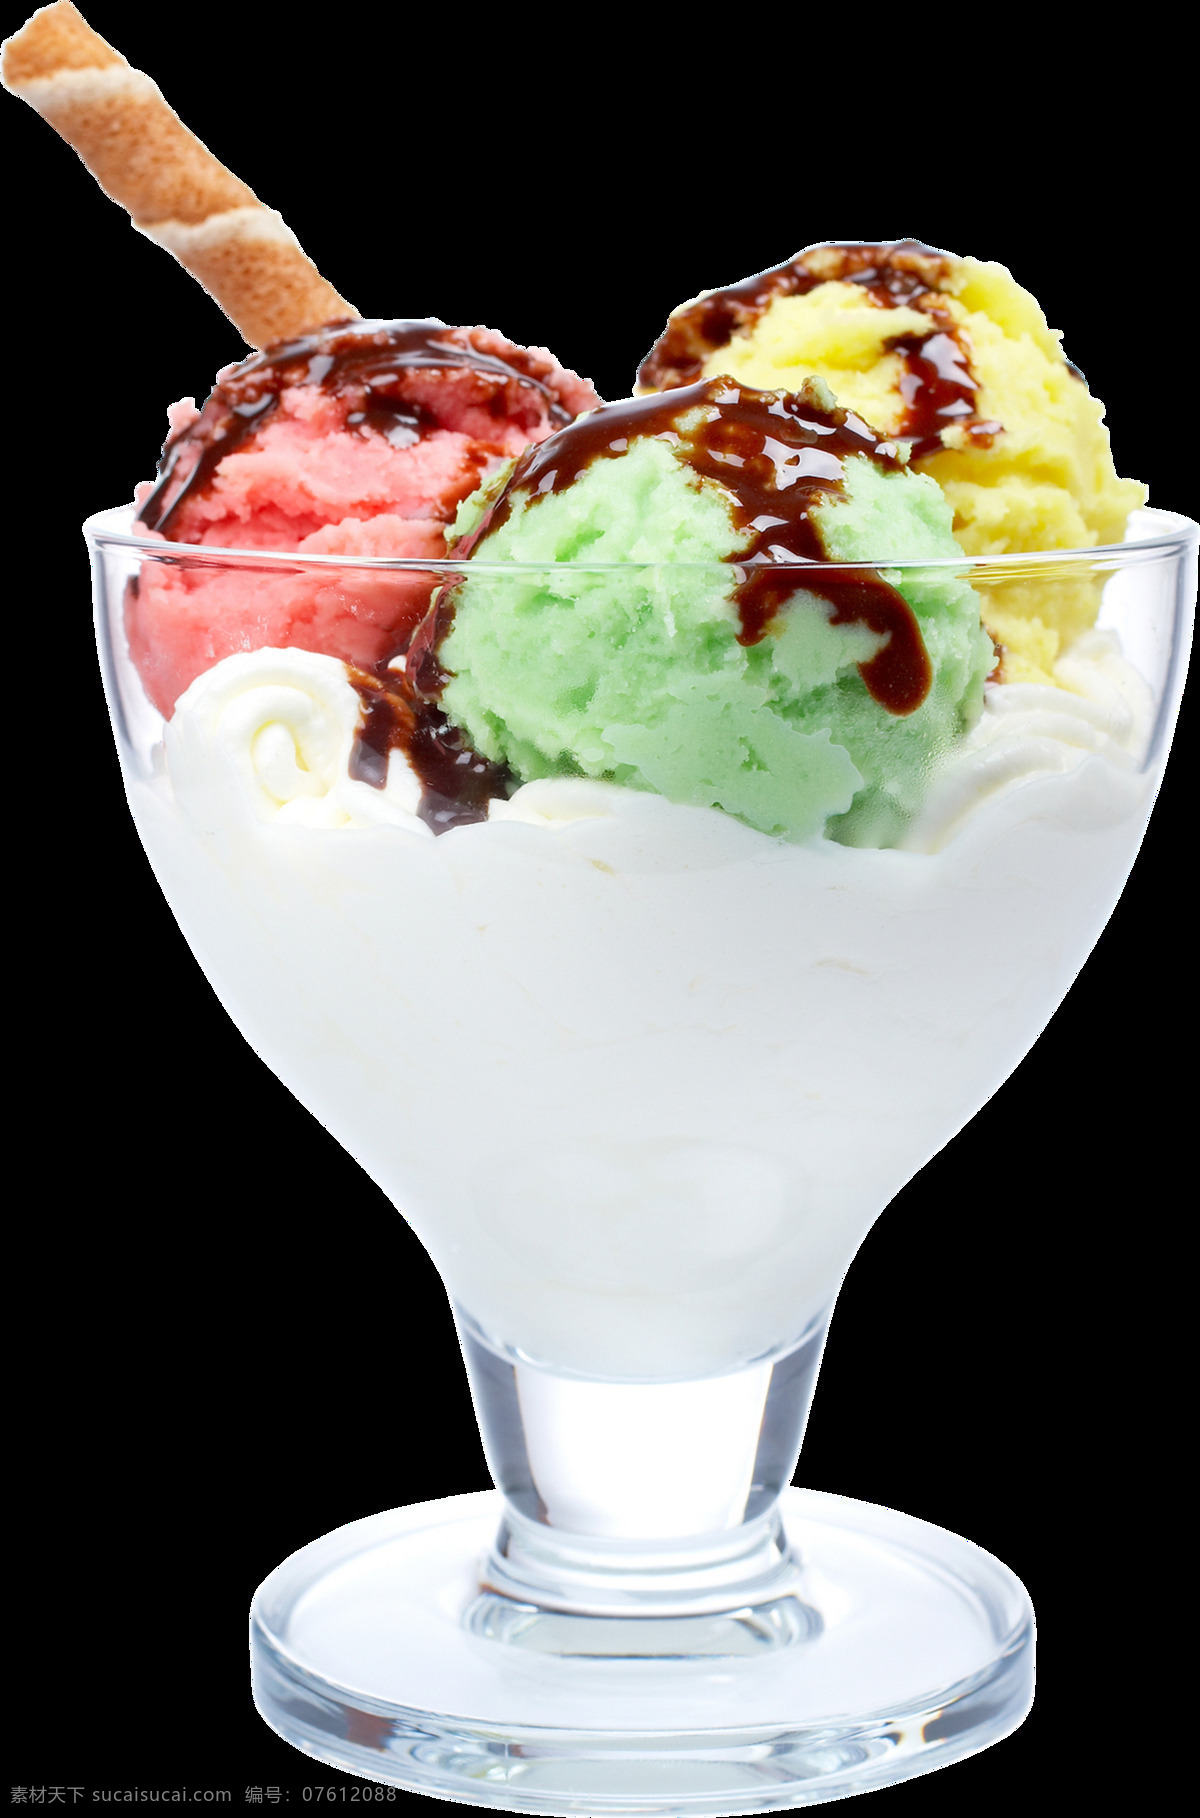 彩色 冰淇淋 免 抠 透明 图 层 冰激凌素材 夏季海报元素 巧克力冰淇淋 夏季 海报 奶油冰淇淋 冰淇淋广告 冰激凌图片 冰淇淋图片 冷饮广告素材 广告